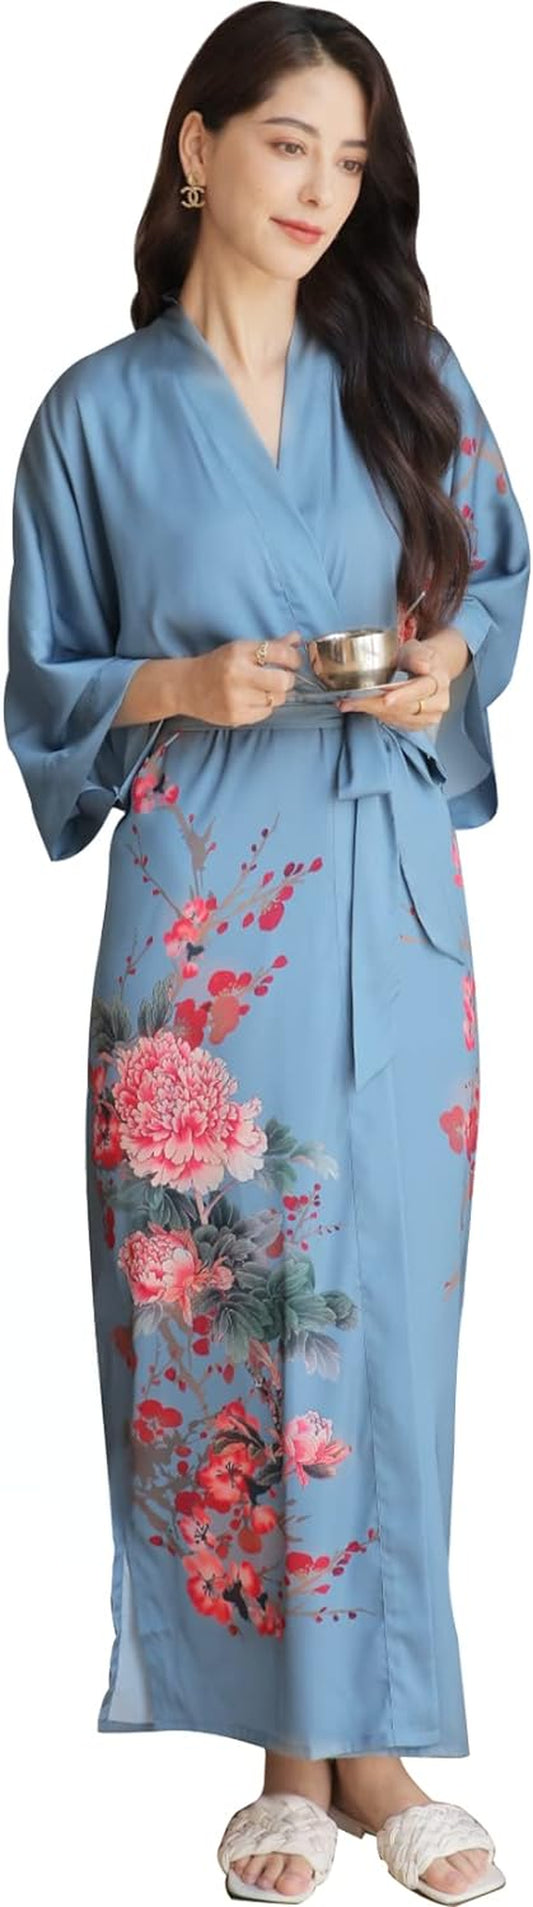 Women'S Satin Kimono Robes, Bathrobes, Pajamas, Loungewear